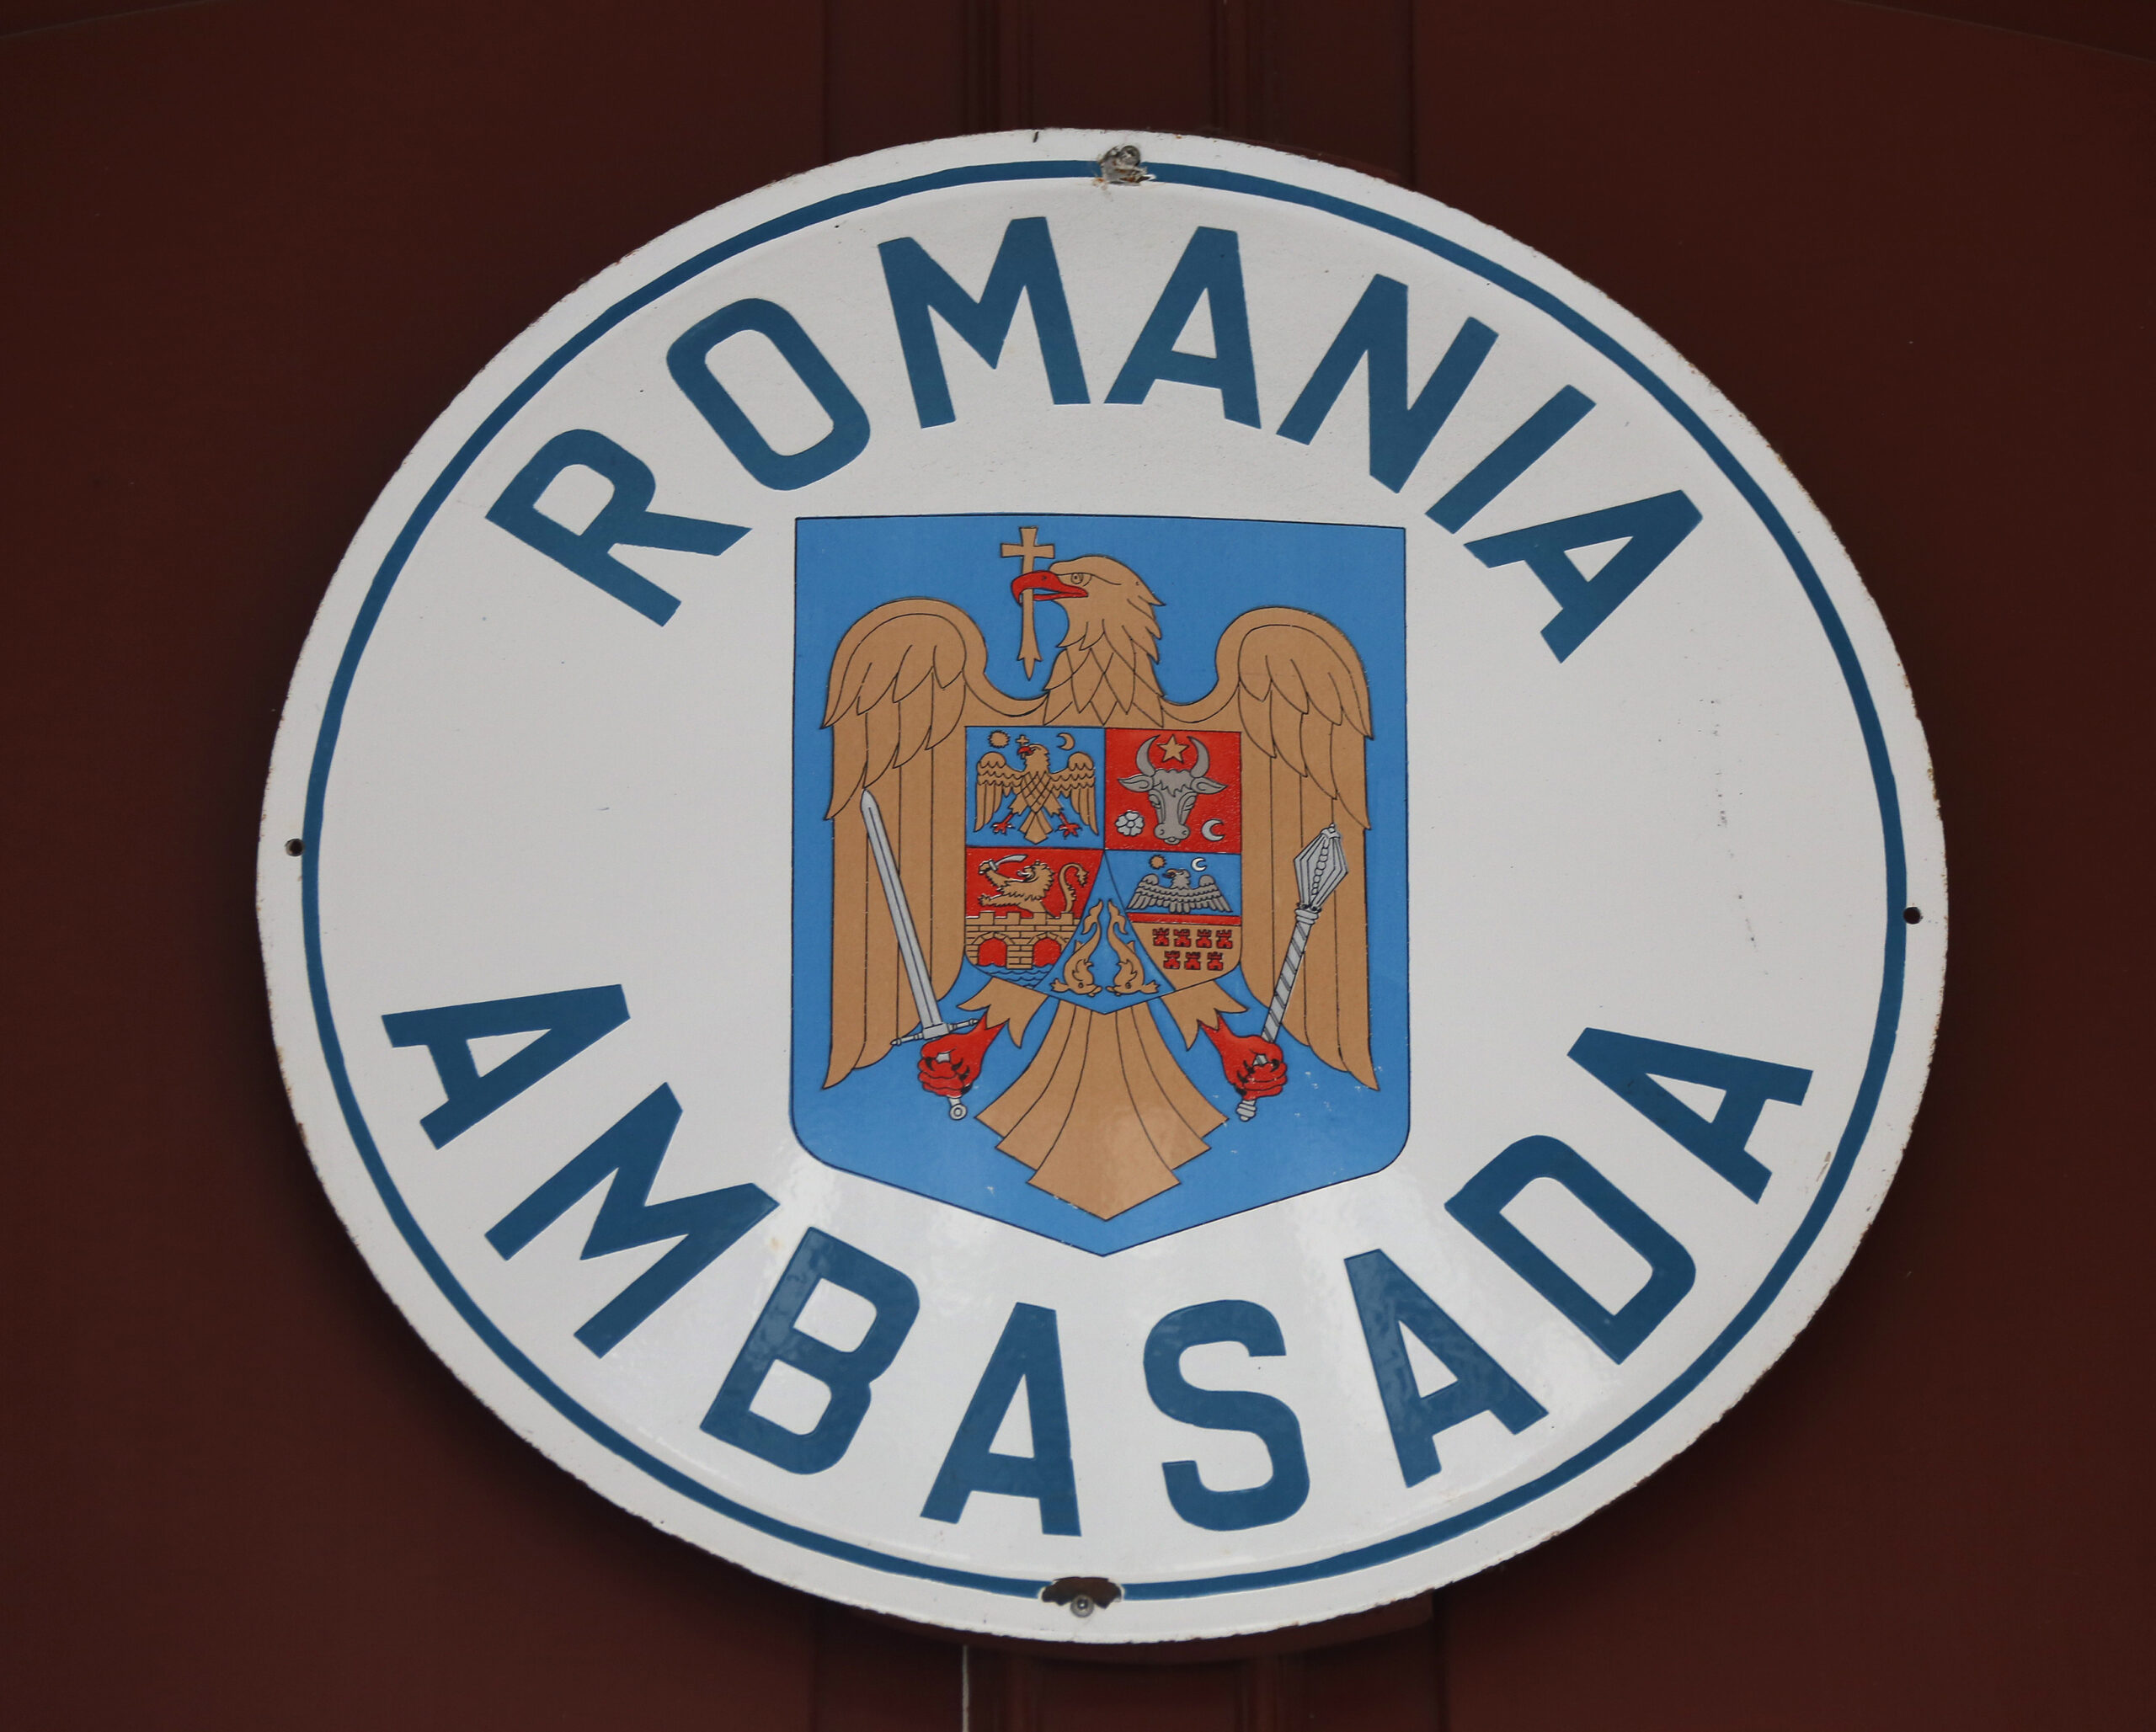 Romania Ambasada in Berlin